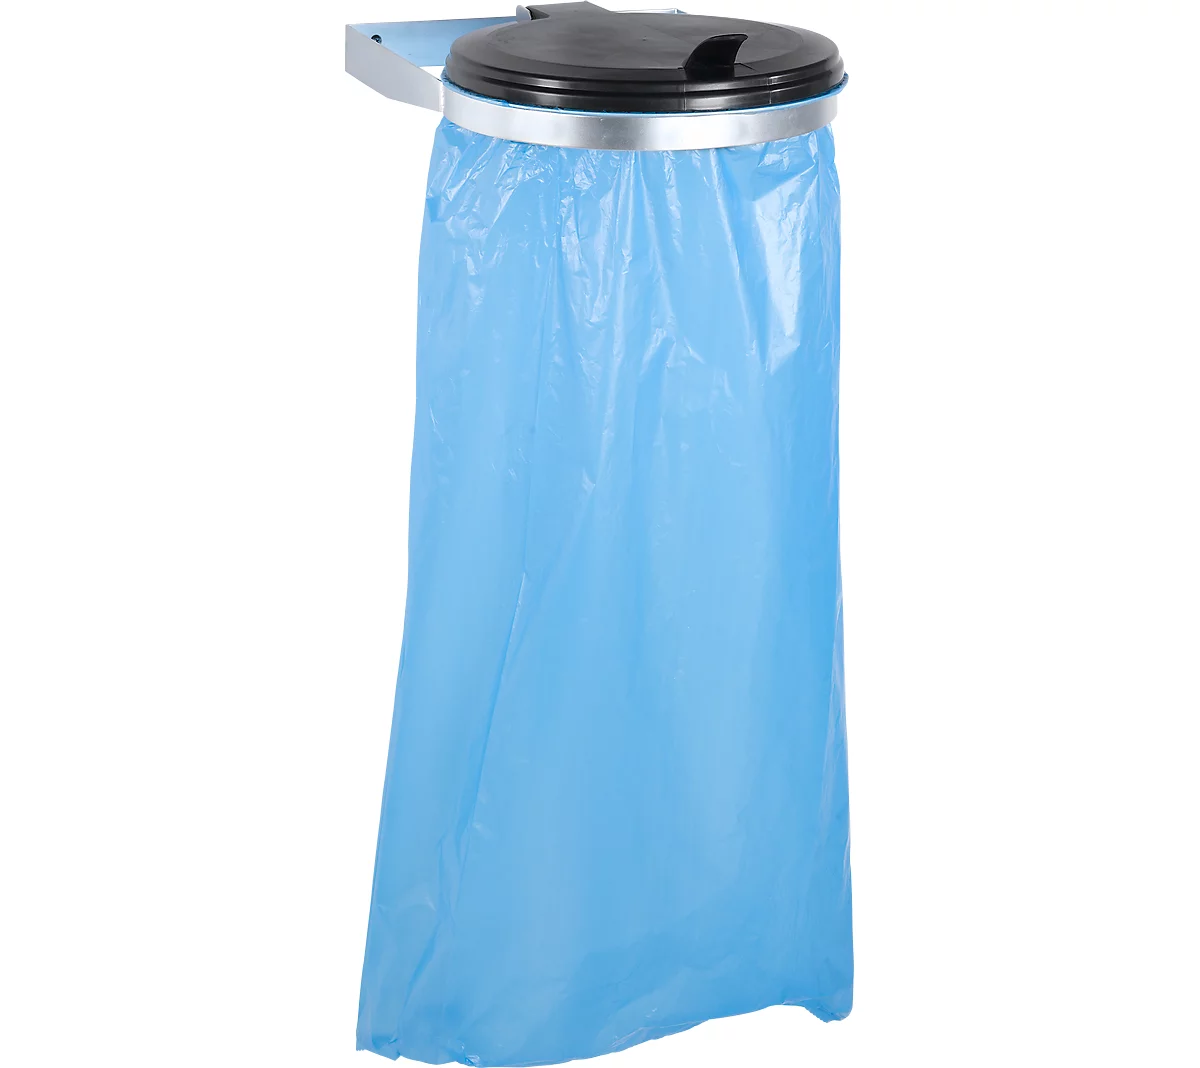 Support sac-poubelle hygiénique, en inox – VAR: pour capacité 120 l,  ouverture du couvercle par pédale